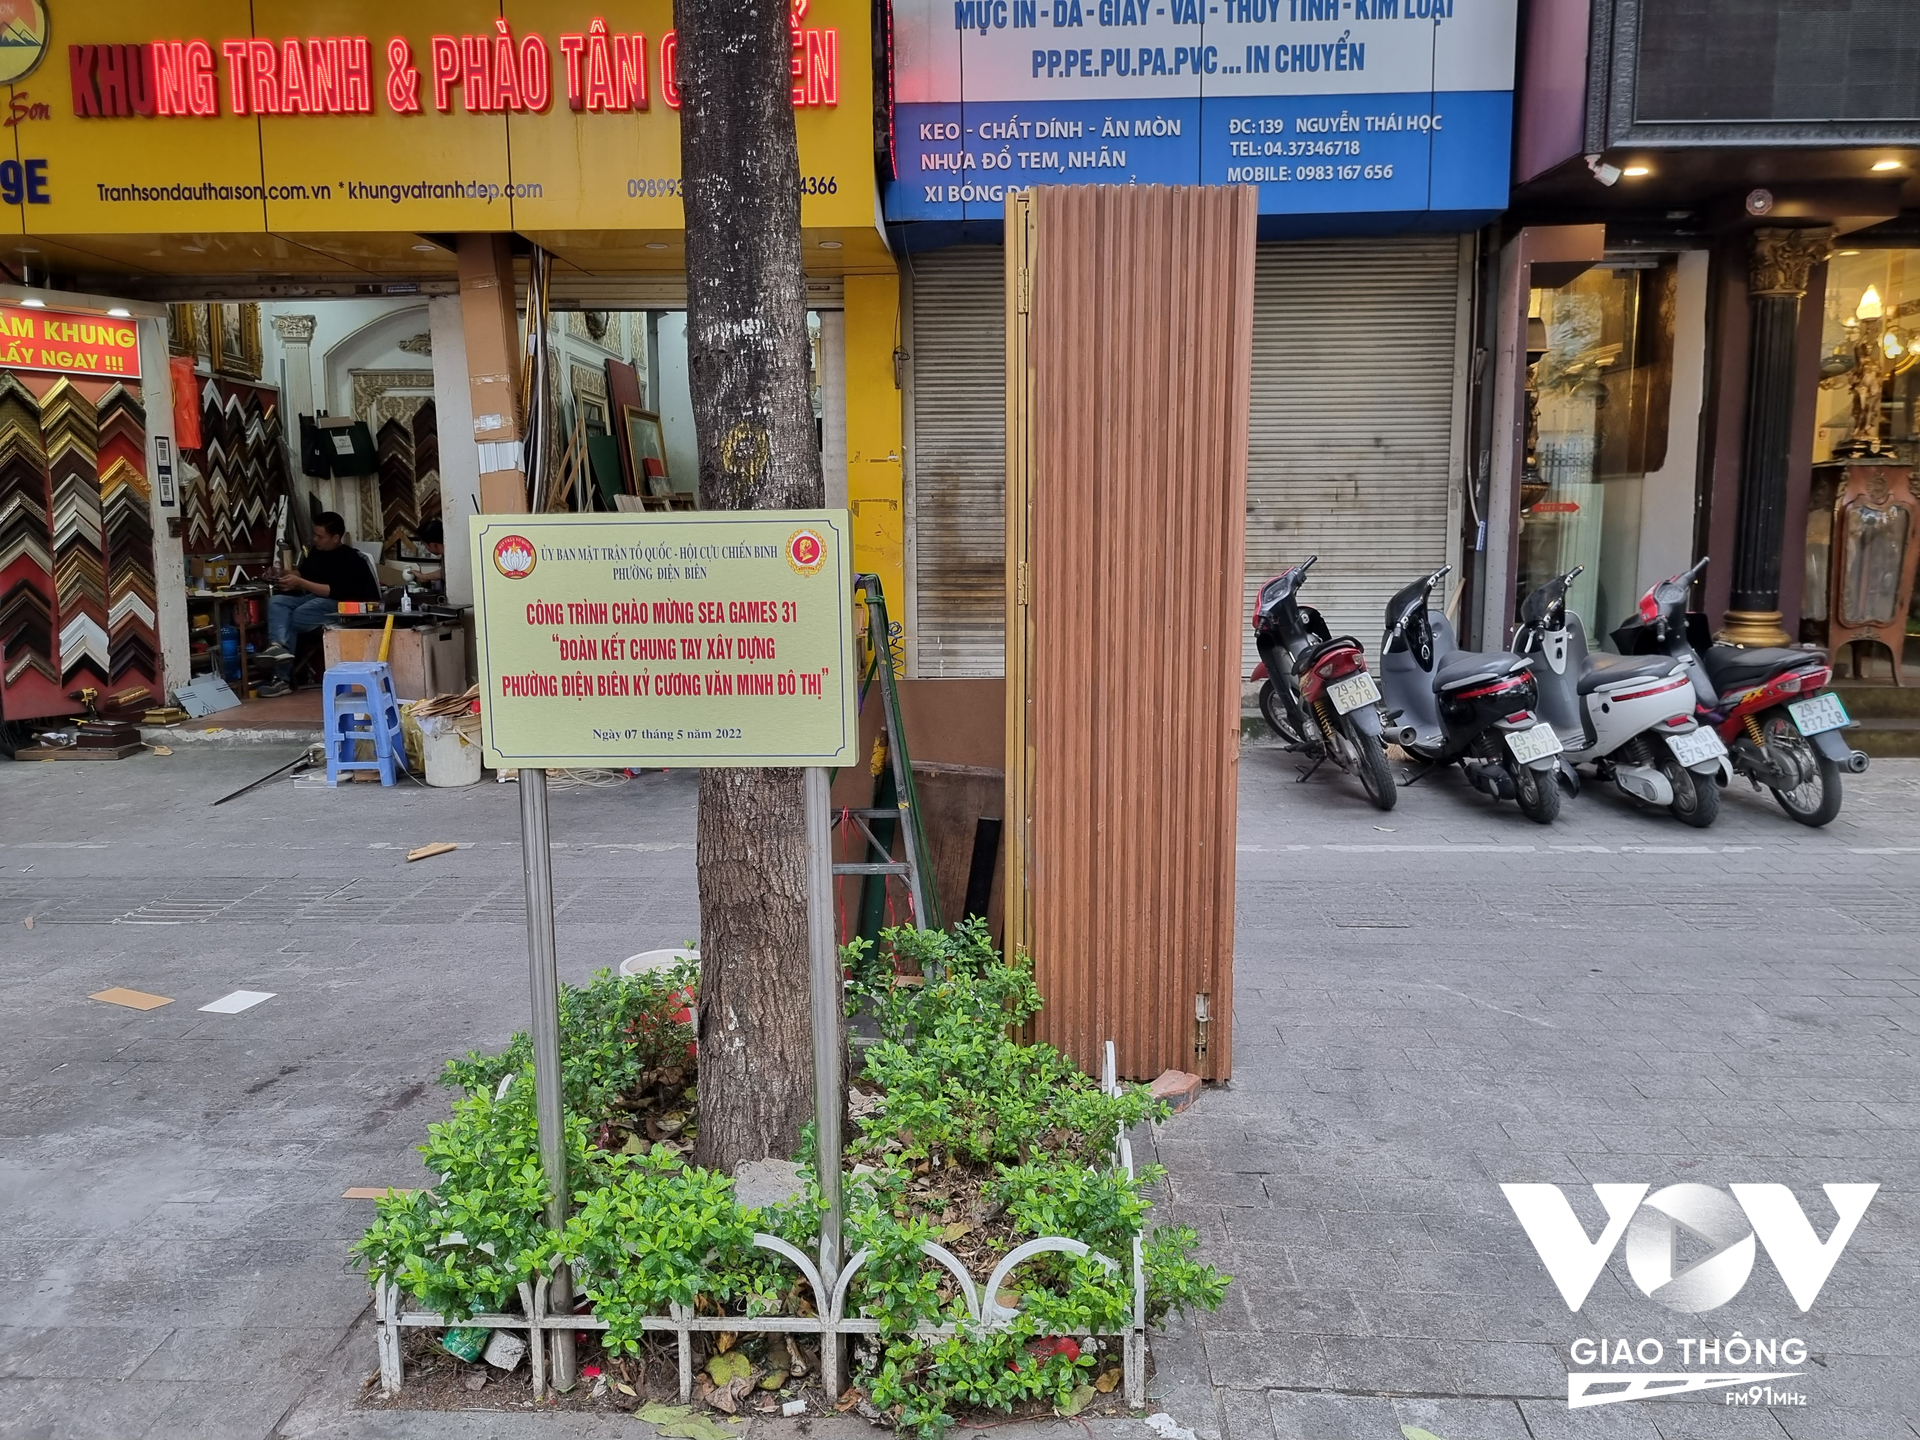 Hai dãy bốt điện và cột đèn chiếu sáng trên đường Nguyễn Thái Học, quận Ba Đình, Hà Nội đã được ''mặc áo giáp'' để chống quảng cáo rao vặt, đồng thời tạo điểm nhấn cảnh quan